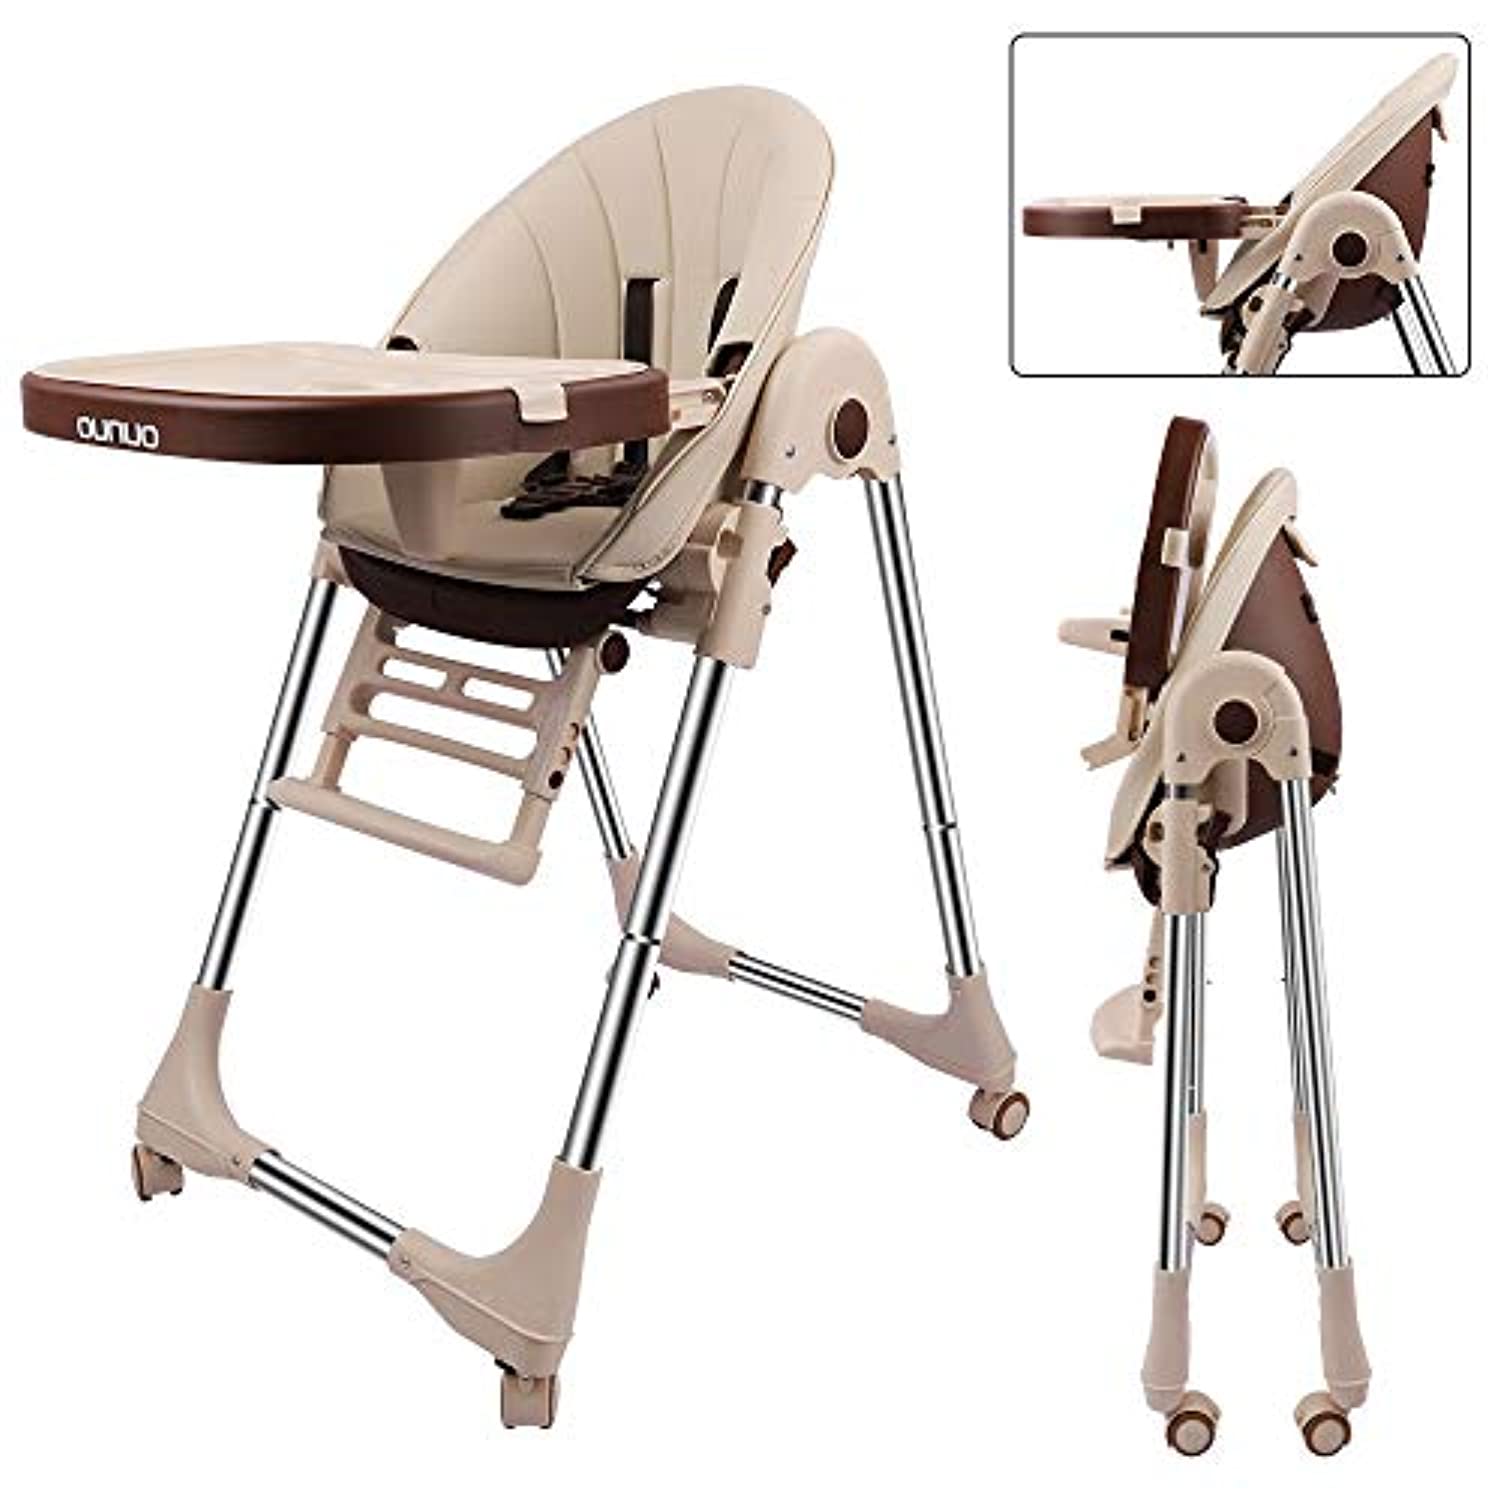 OUNUO Baby Hochstuhl Vertehllbar und Klappbar Kinderhochstuhl mitwachsend  Kindersitz Kinderstuhl mit Sicherheitsgurt ab 6 Monaten